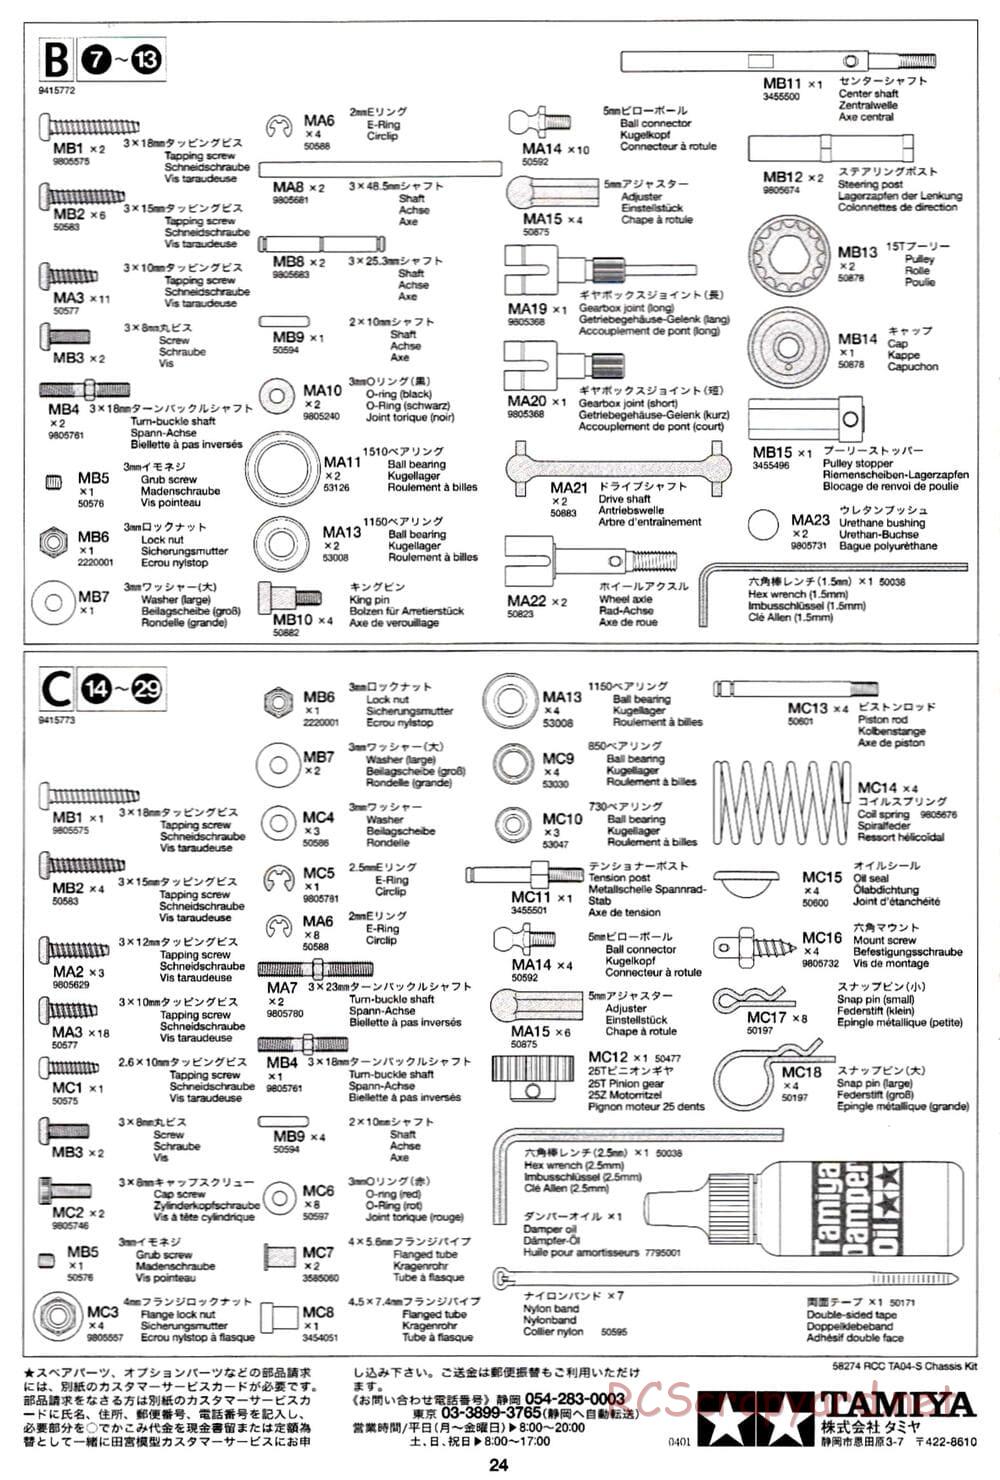 Tamiya - TA-04S Chassis - Manual - Page 24